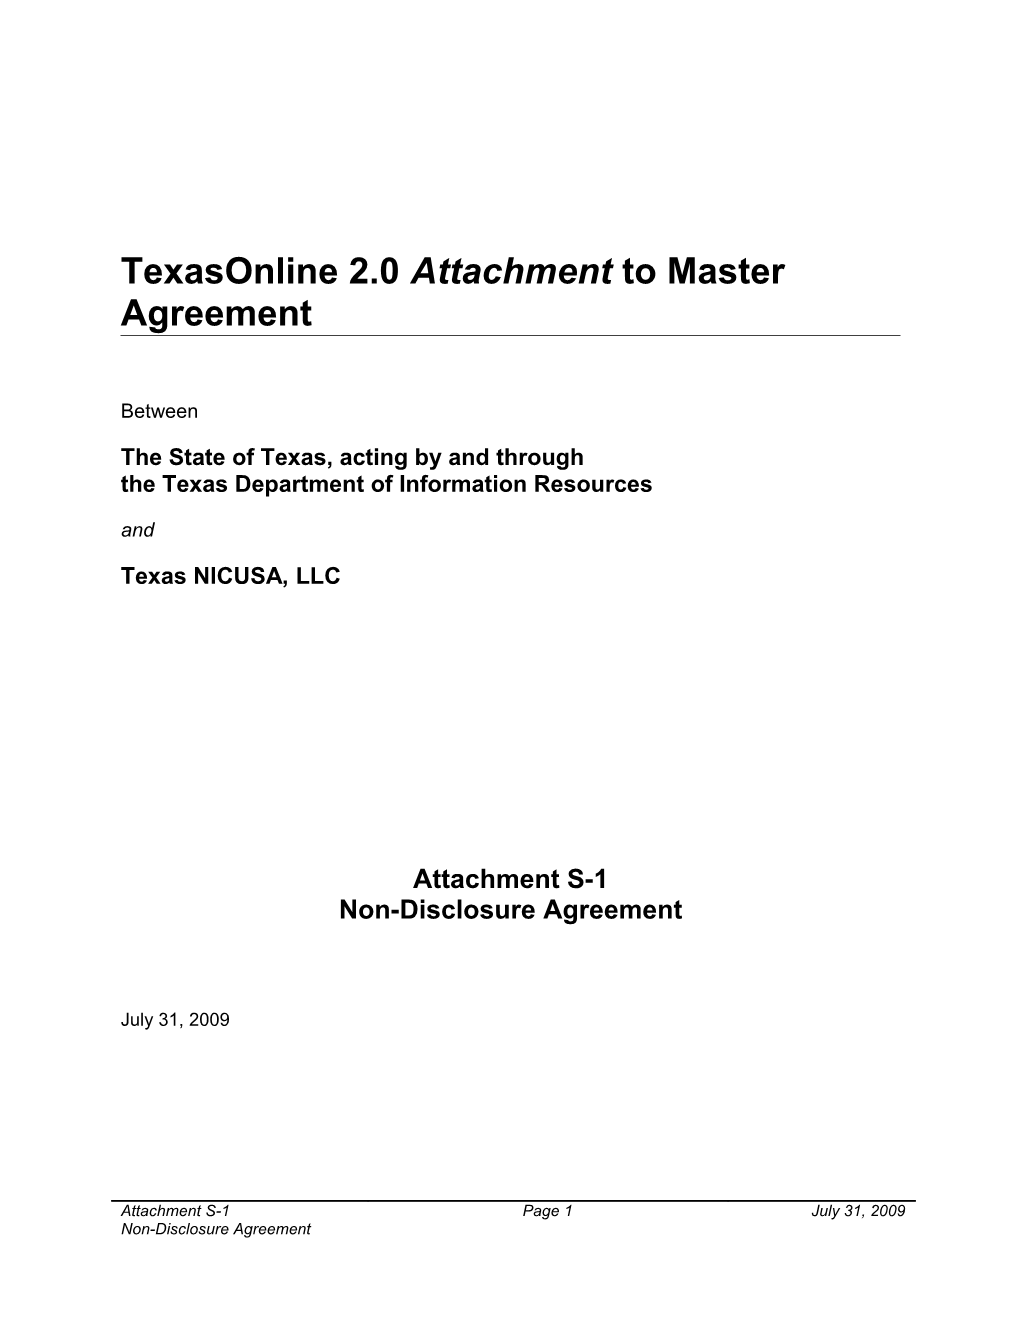 DIR-SDD-1075 Attachment S-1 Non-Disclosure Agreement